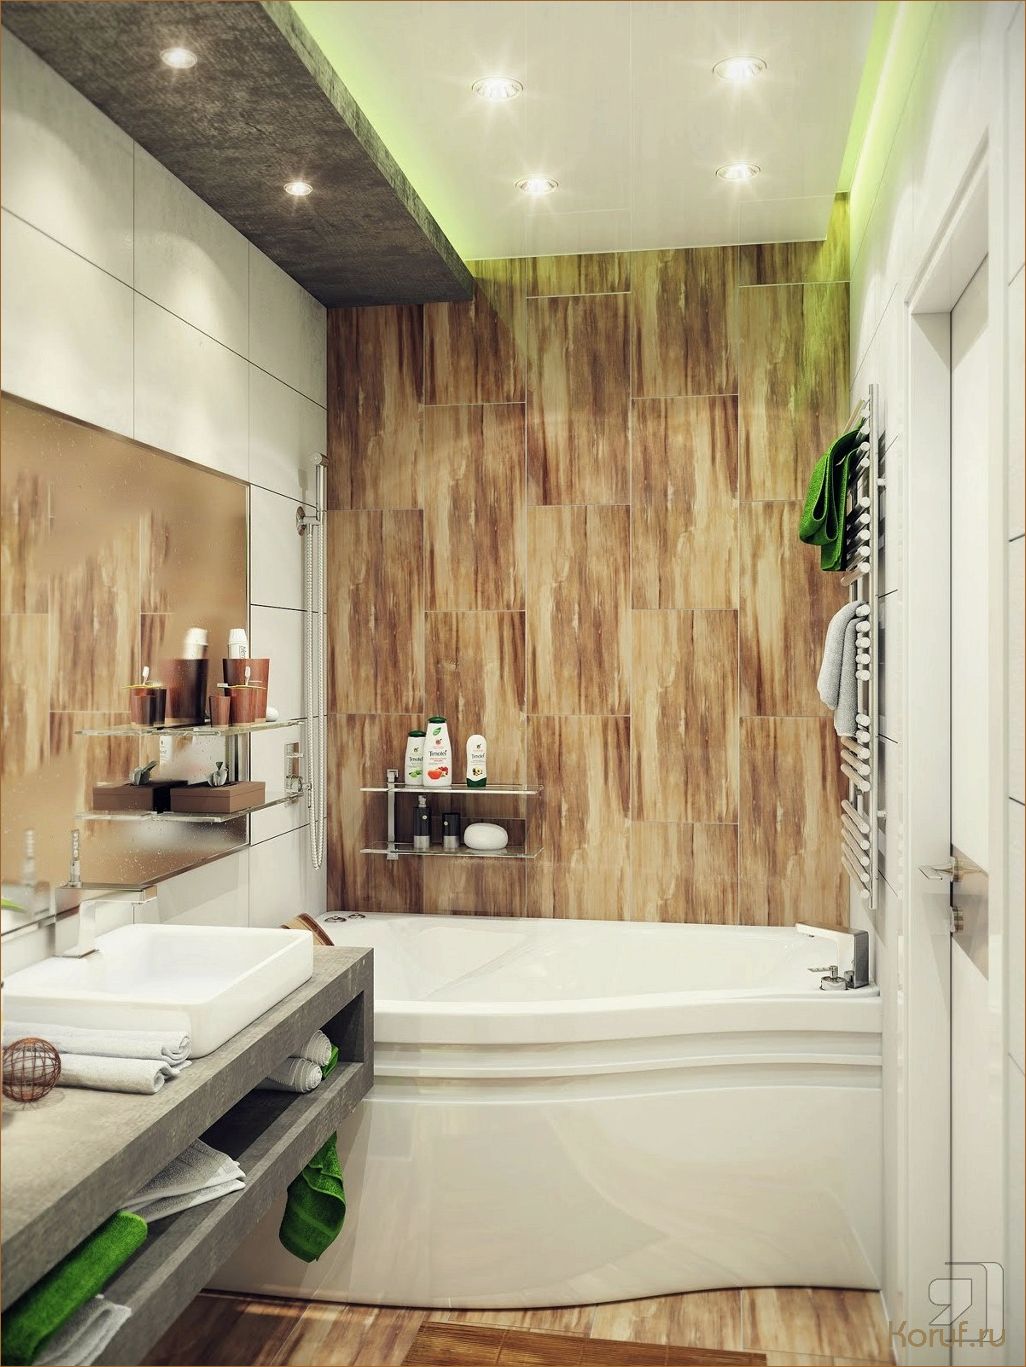 Дизайн установки ванны: создание комфортного пространства для расслабления и отдыха